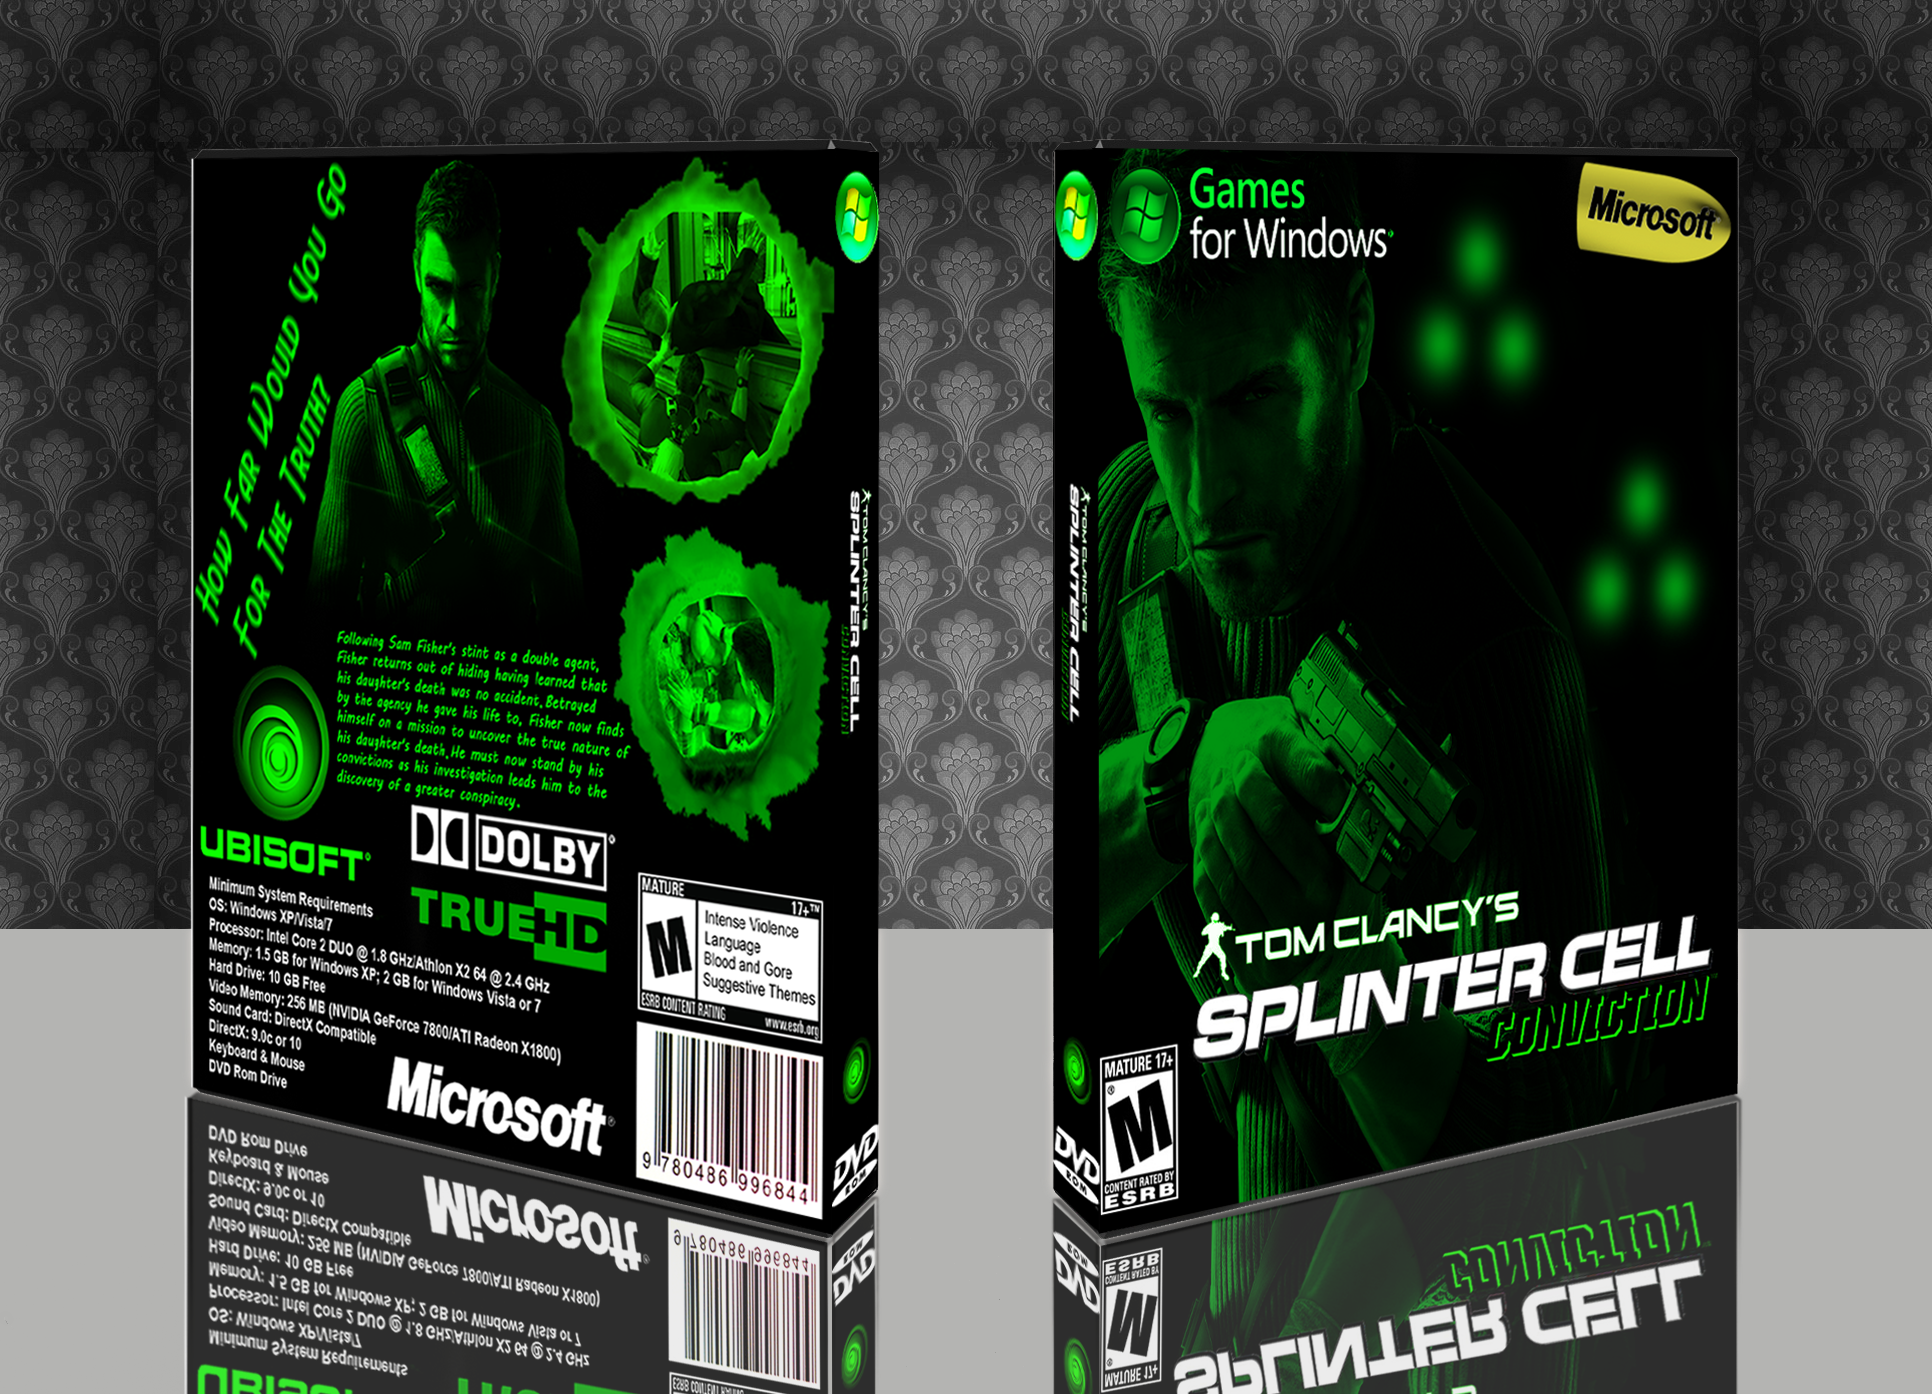 Splinter Cell Conviction box cover